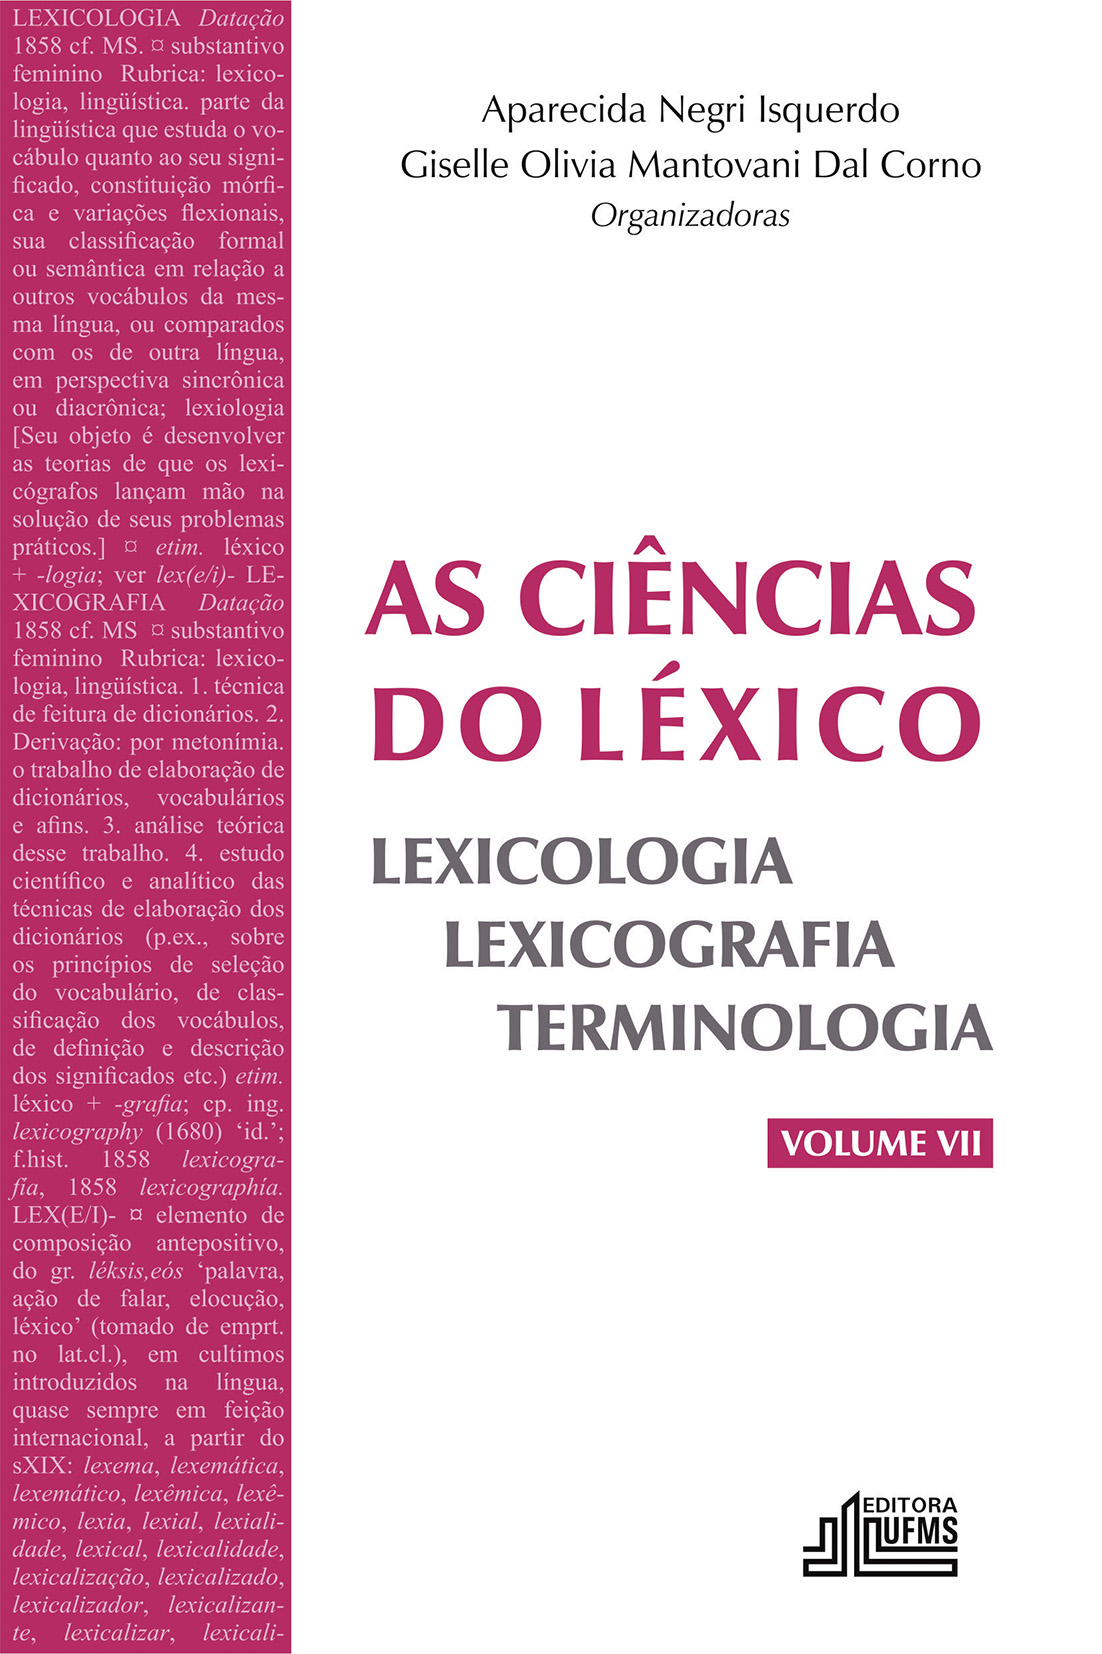 Lexicologia: Dialetos, Dicionários, Estrangeirismos, Etimologias,  Expressões, Gírias, Lexicólogos do Brasil, Sistemas de numeração,  Vocabulário